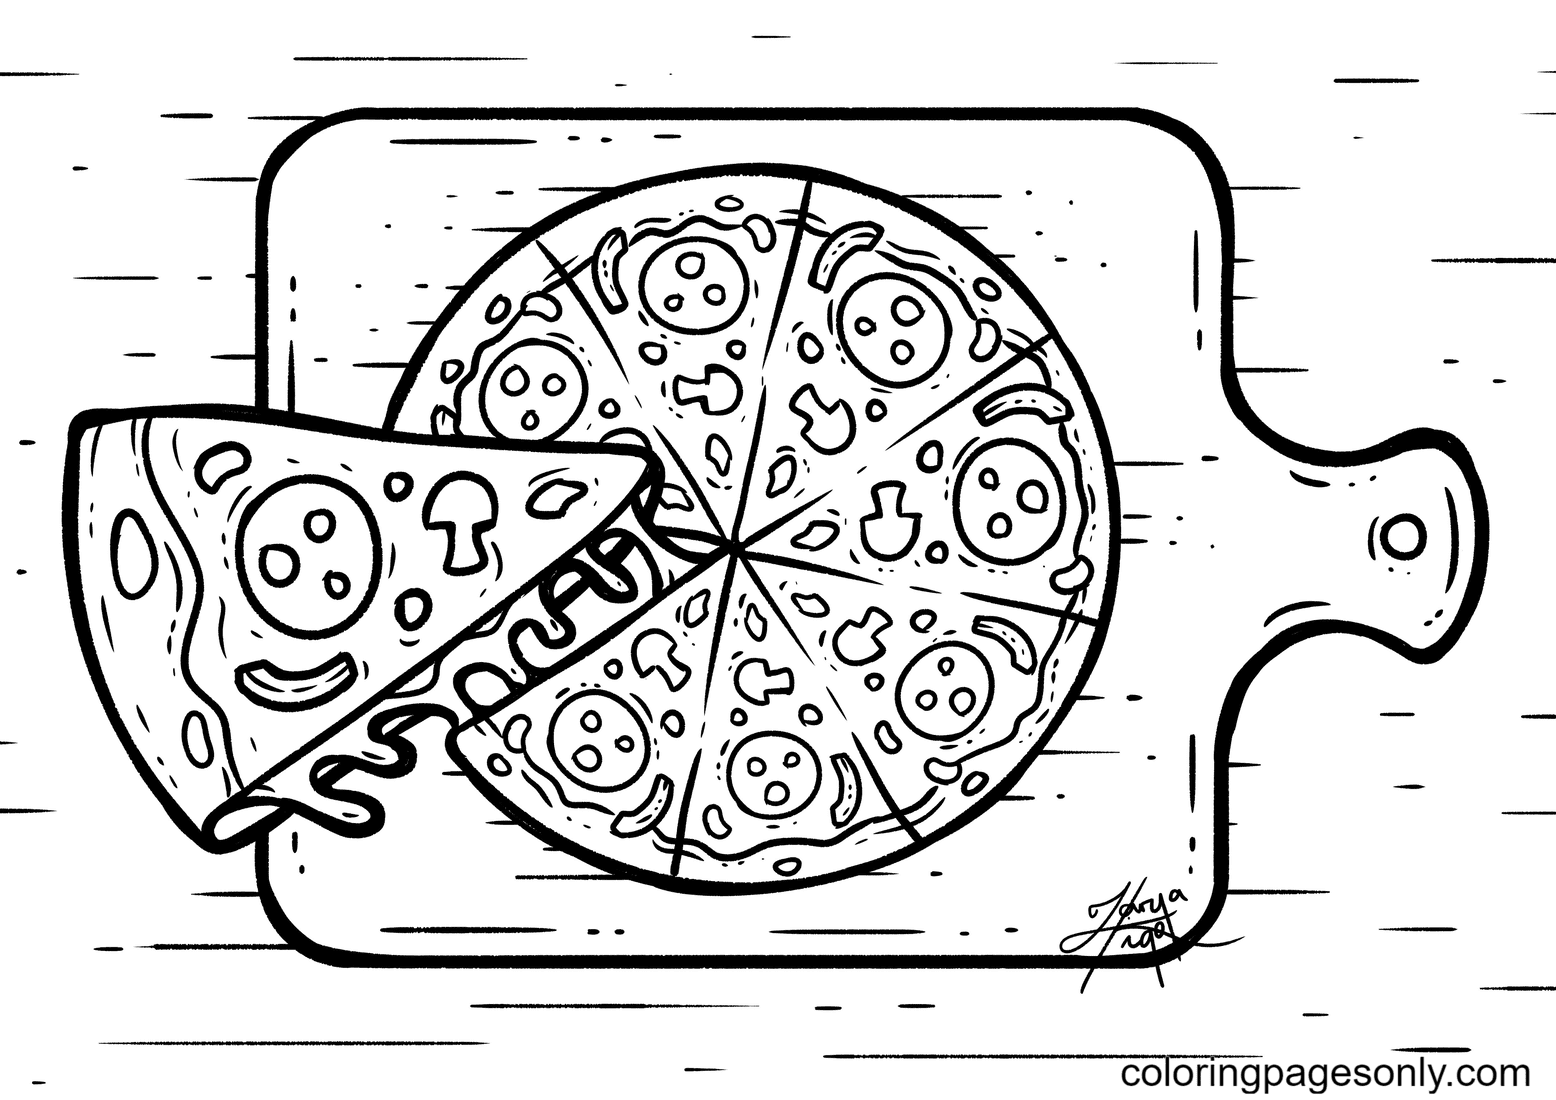 Página para colorear de pizza con queso y pepperonis, champiñones